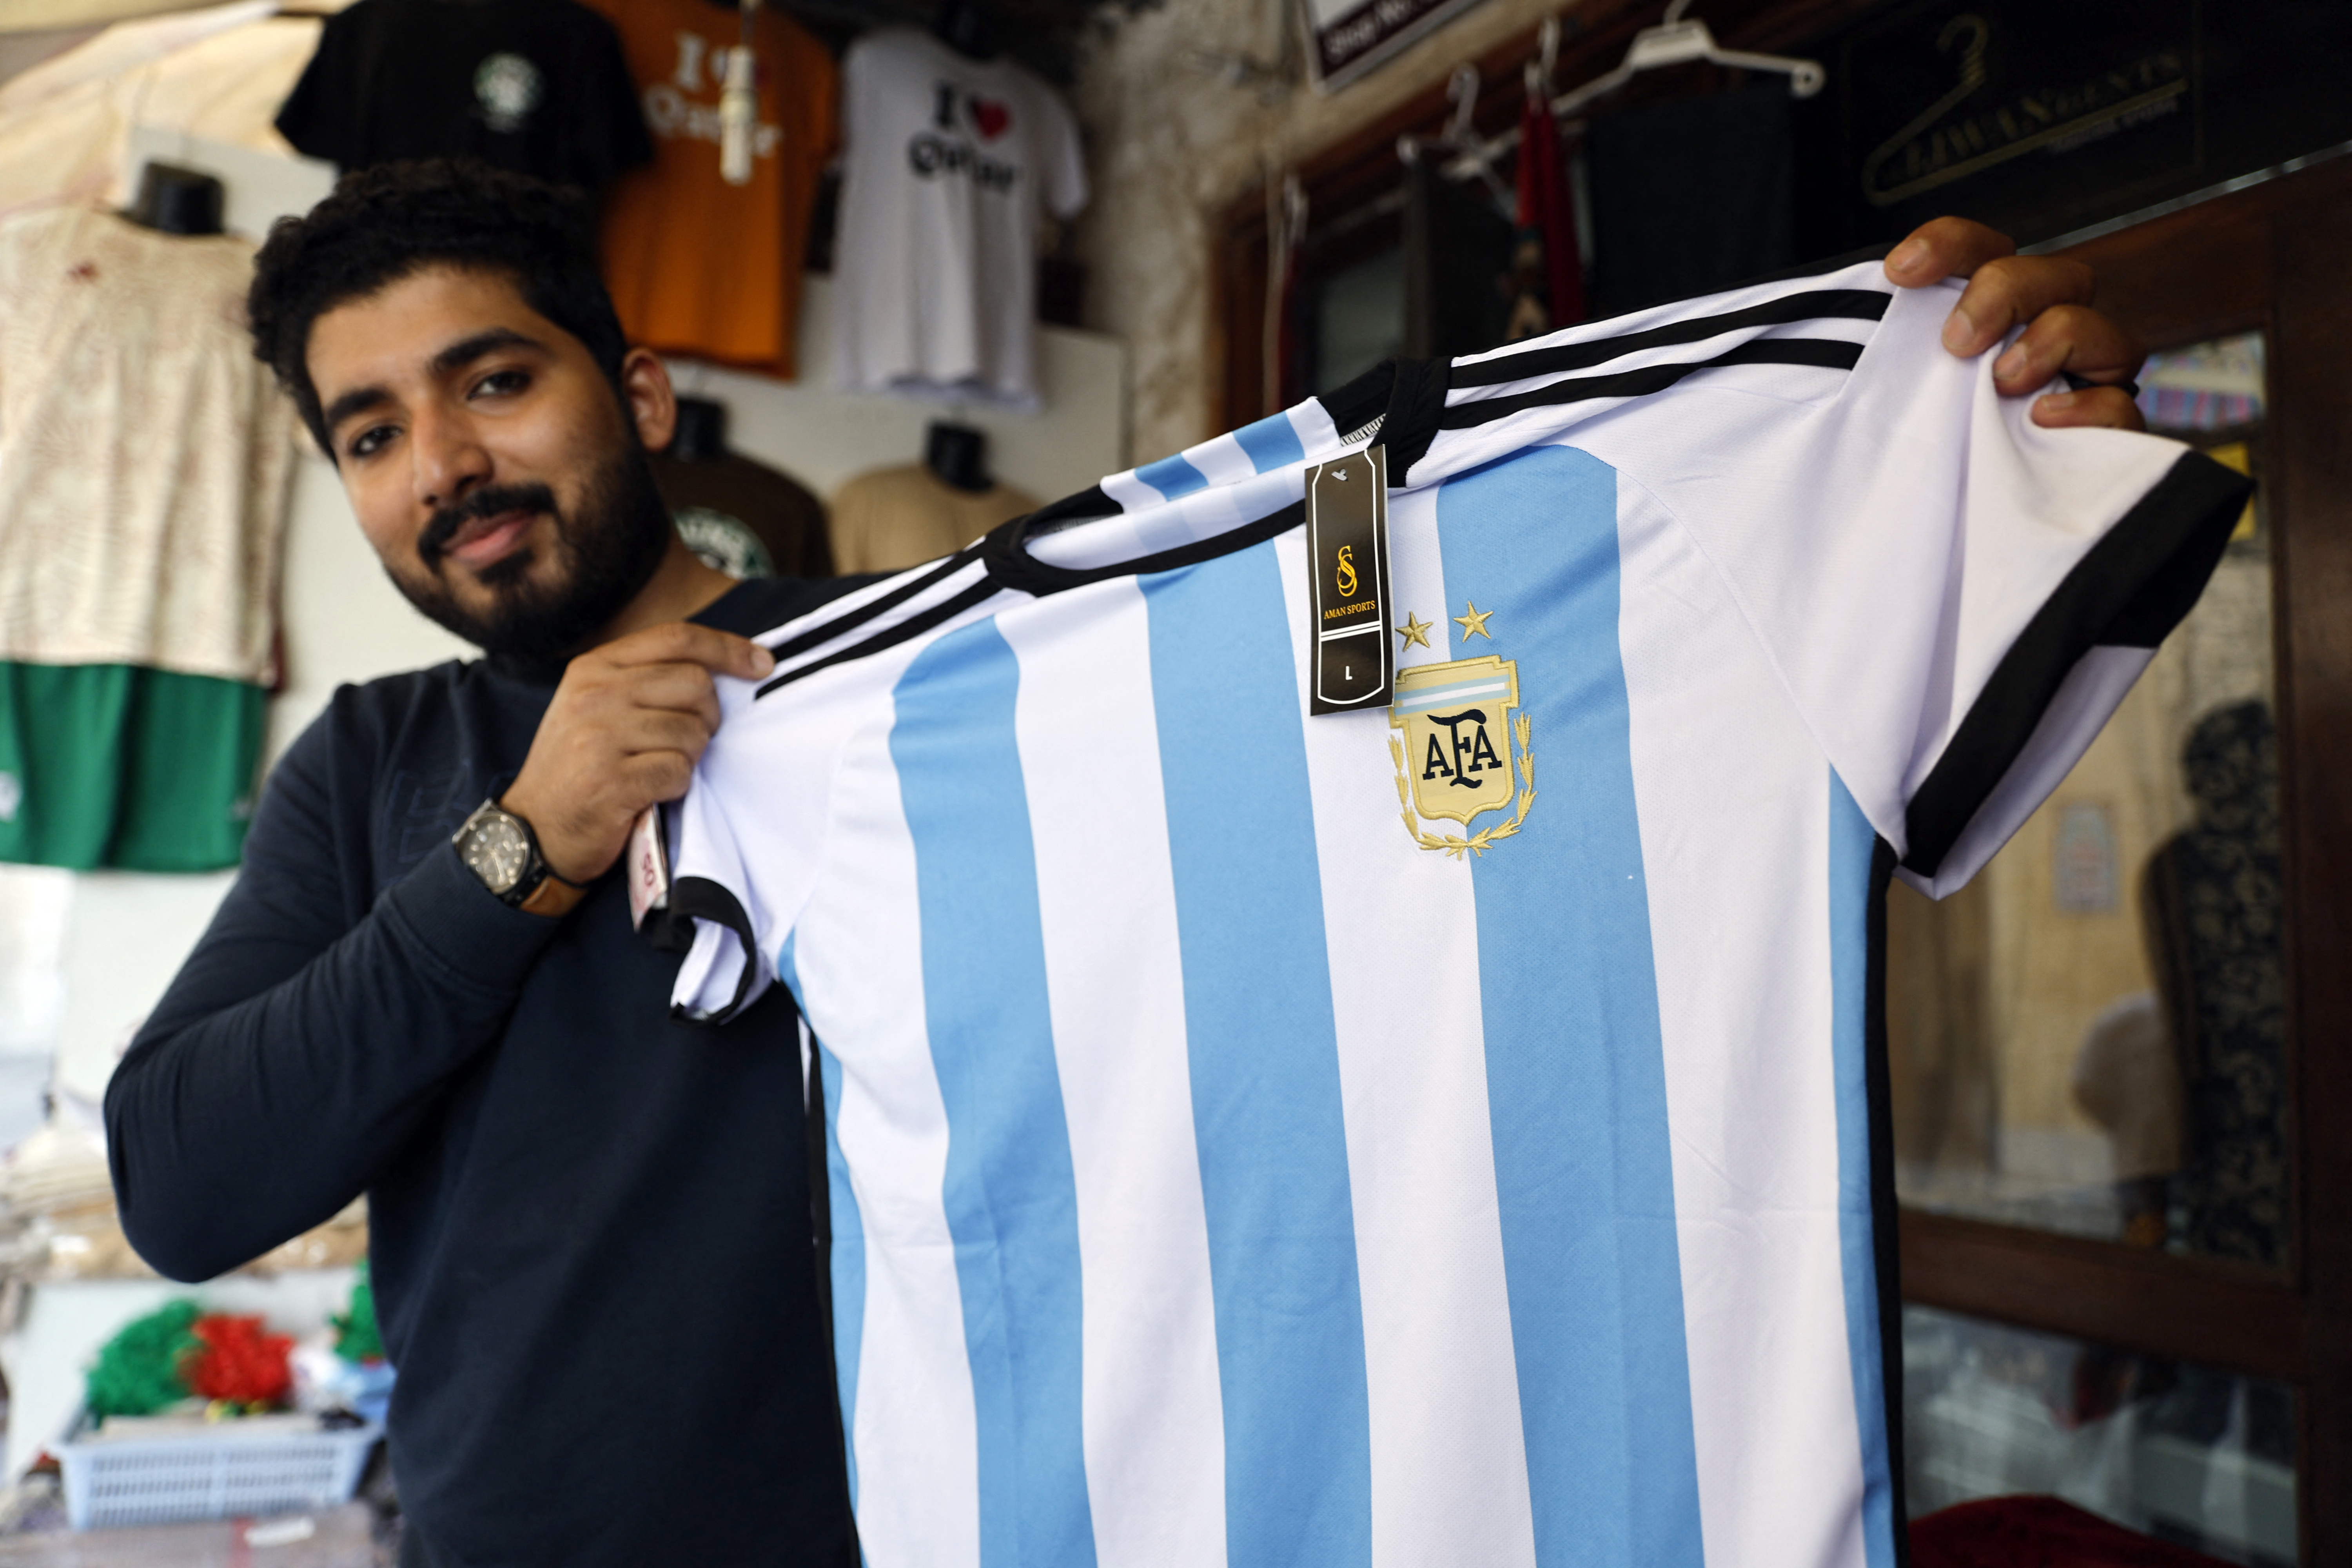 Los argentinos pueden ingresar, permanecer y transitar por Qatar sin la necesidad de una visa. (REUTERS/Suhaib Salem)